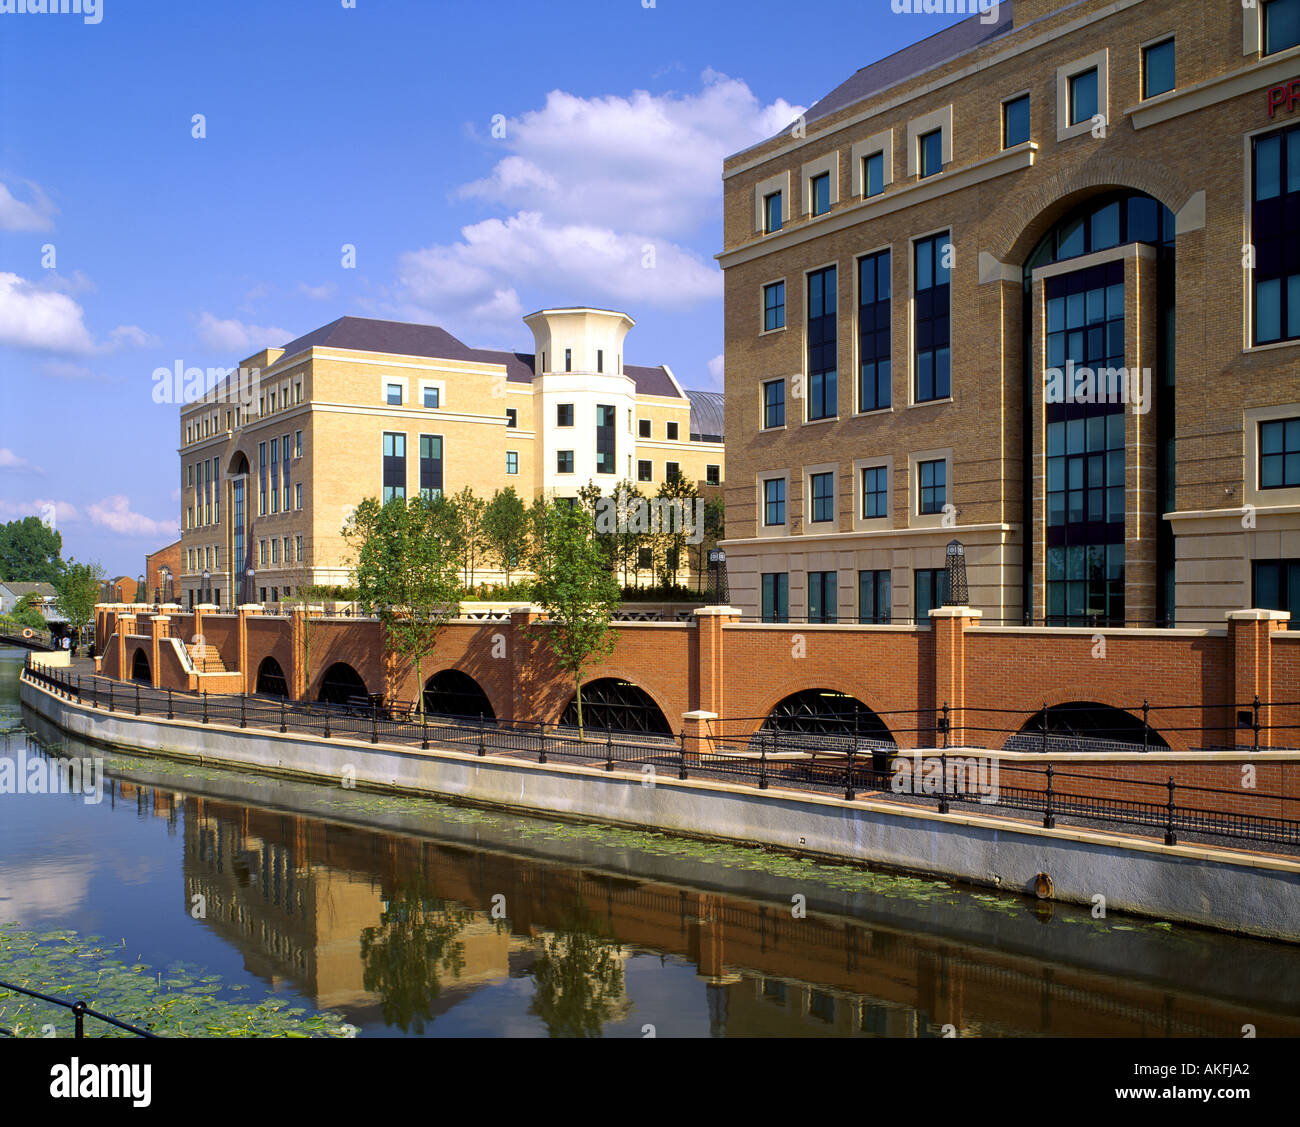 GB - Berkshire: Kennett Avon Canal en la lectura Foto de stock